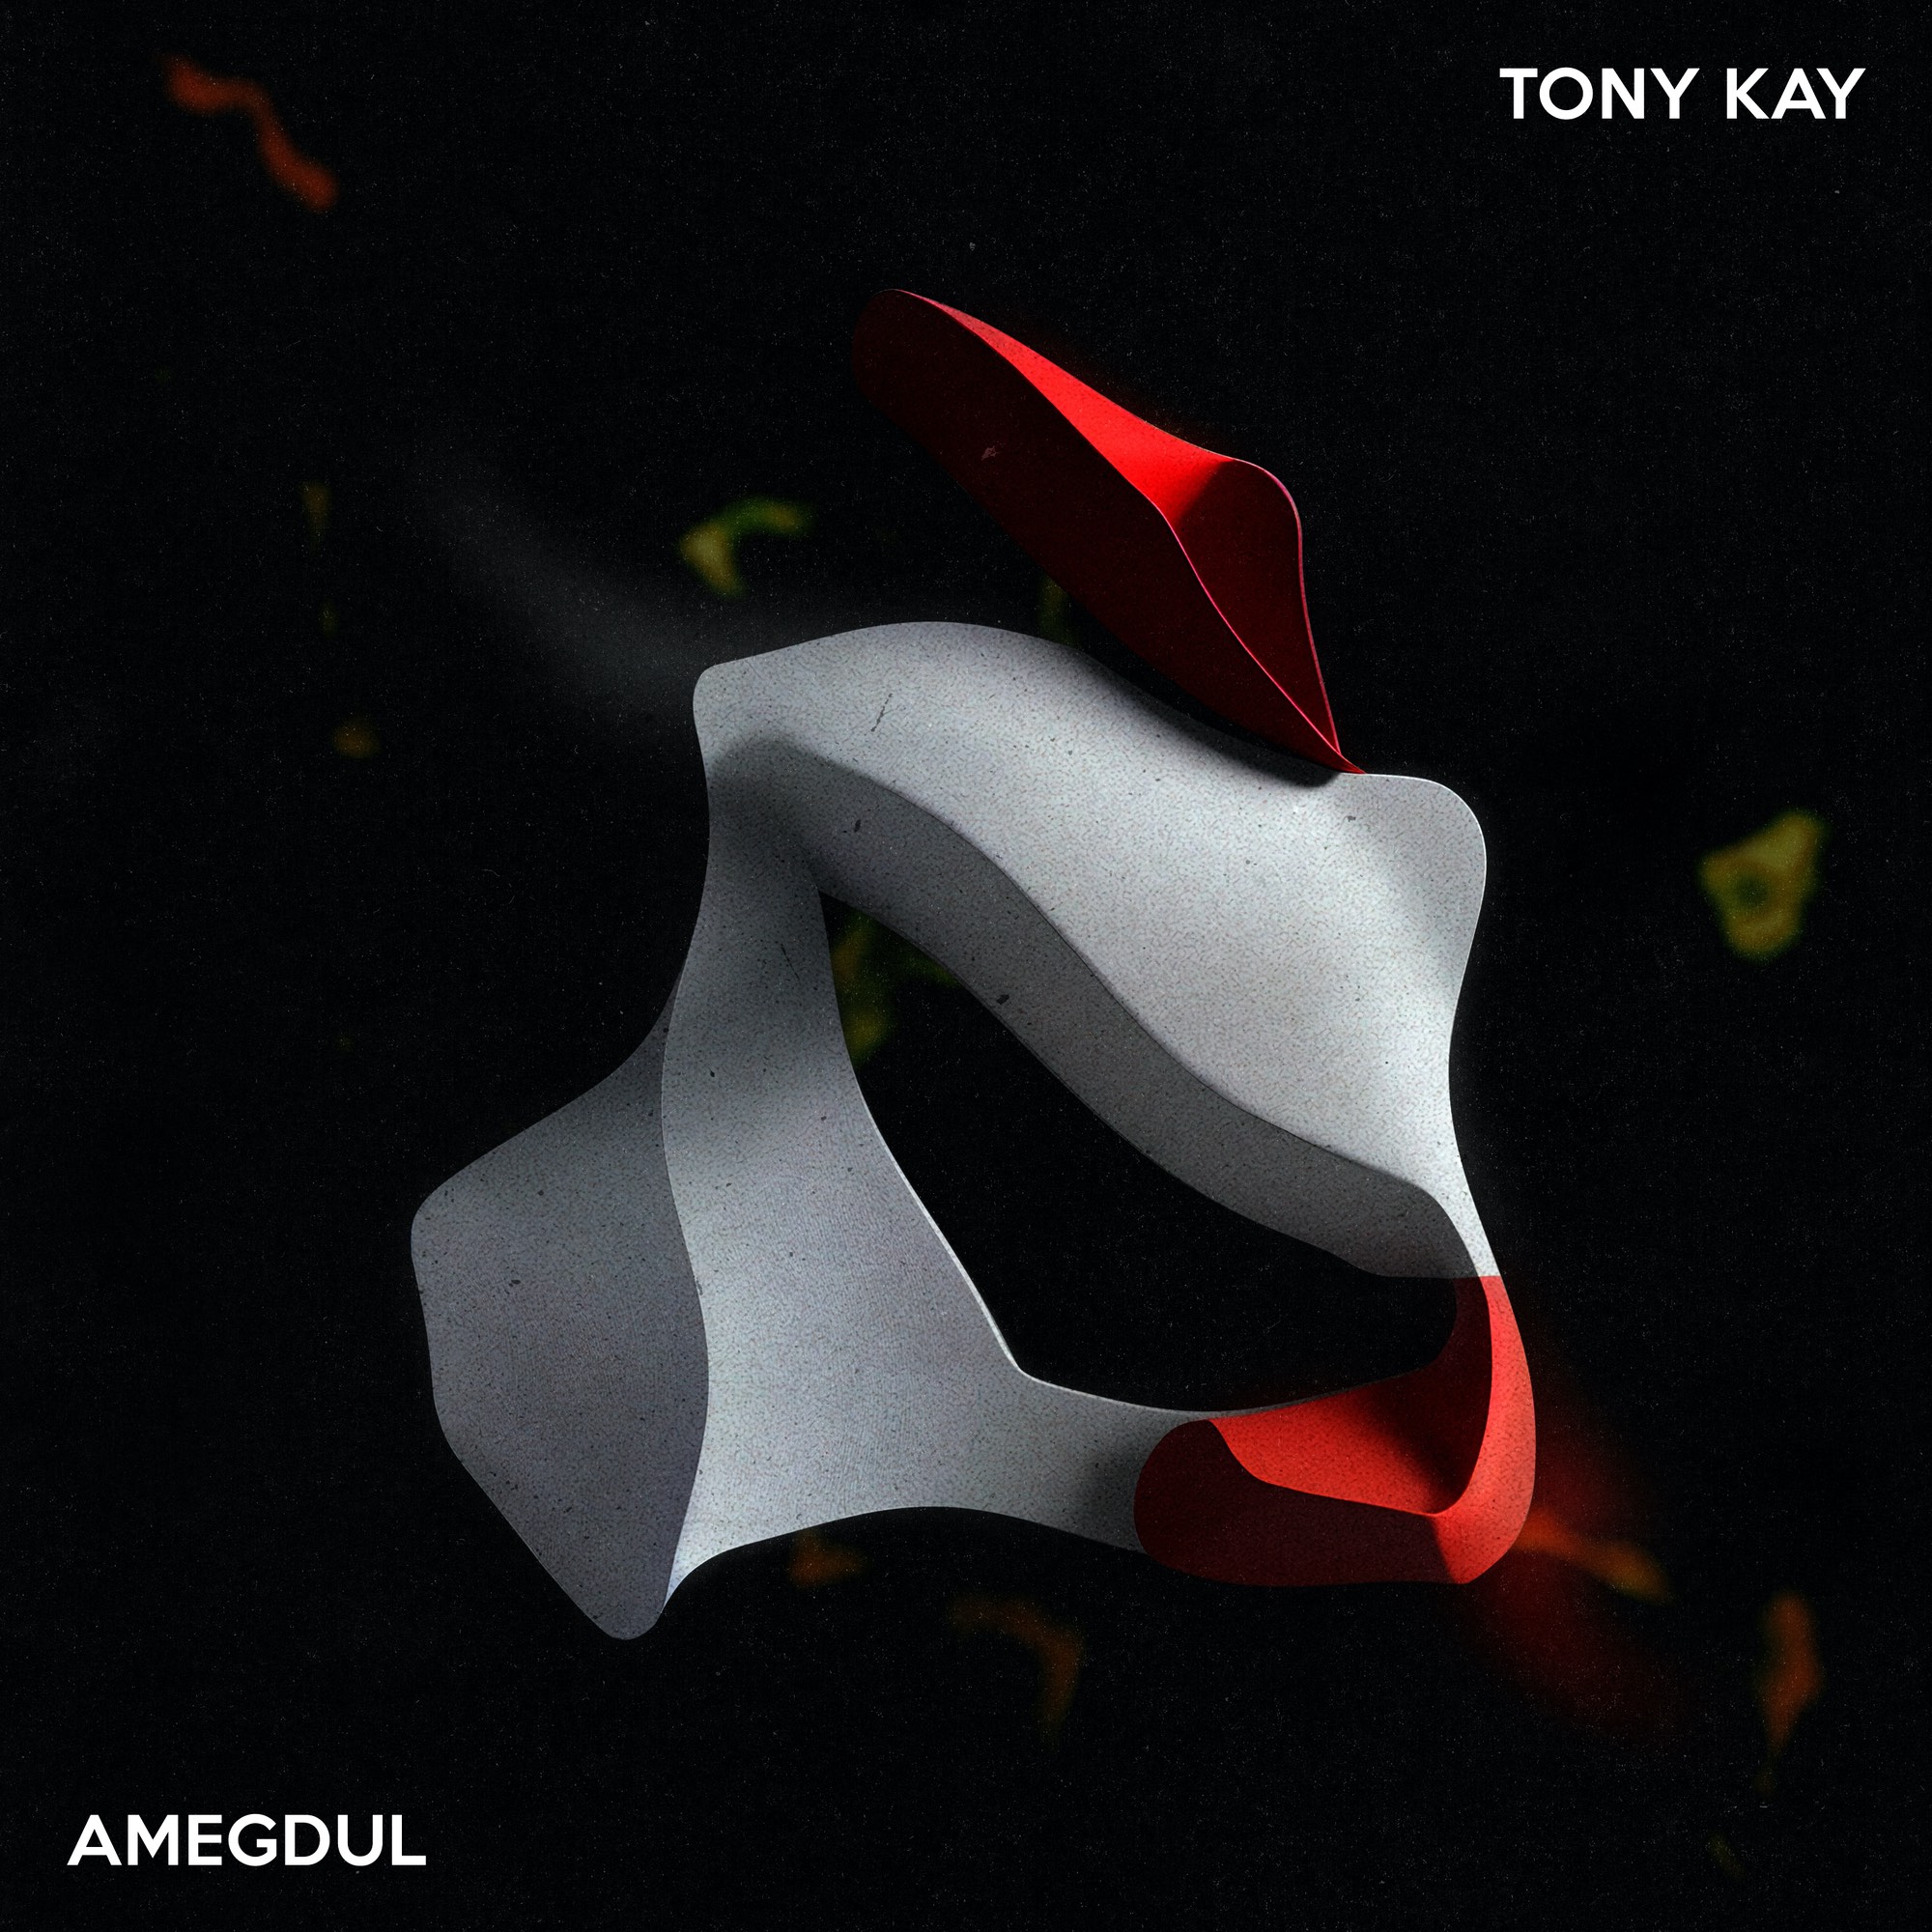 Tony Kay Presents 'Amegdul'